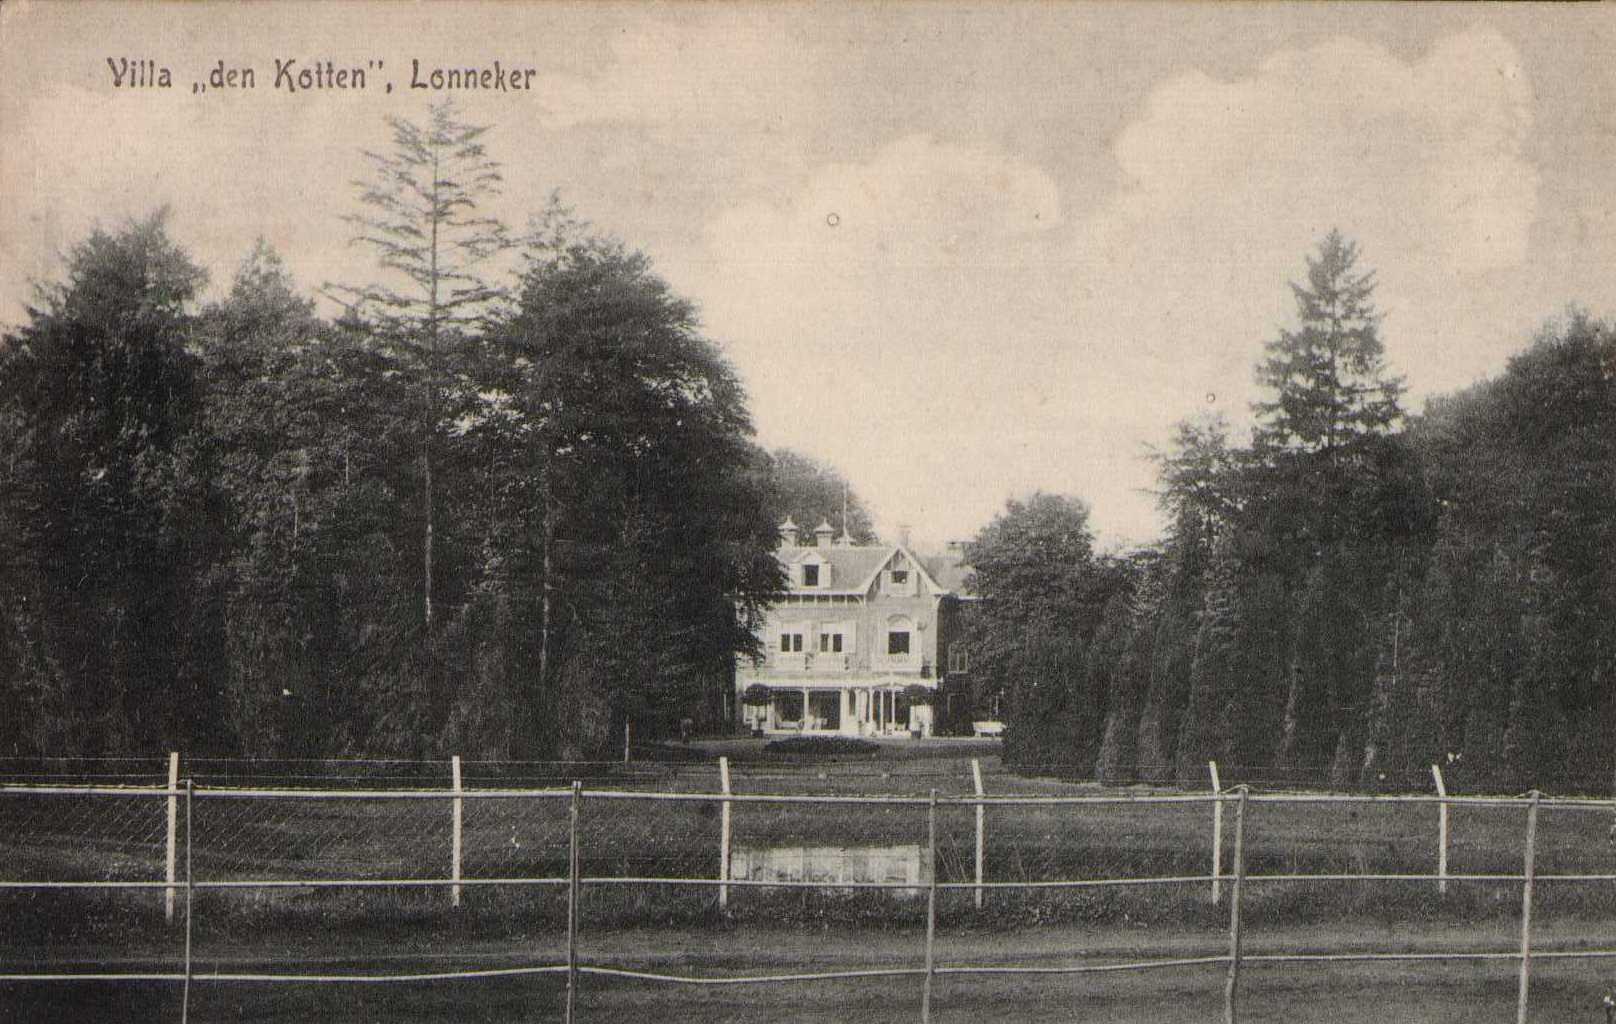 Villa-den-kotten-1919.jpg